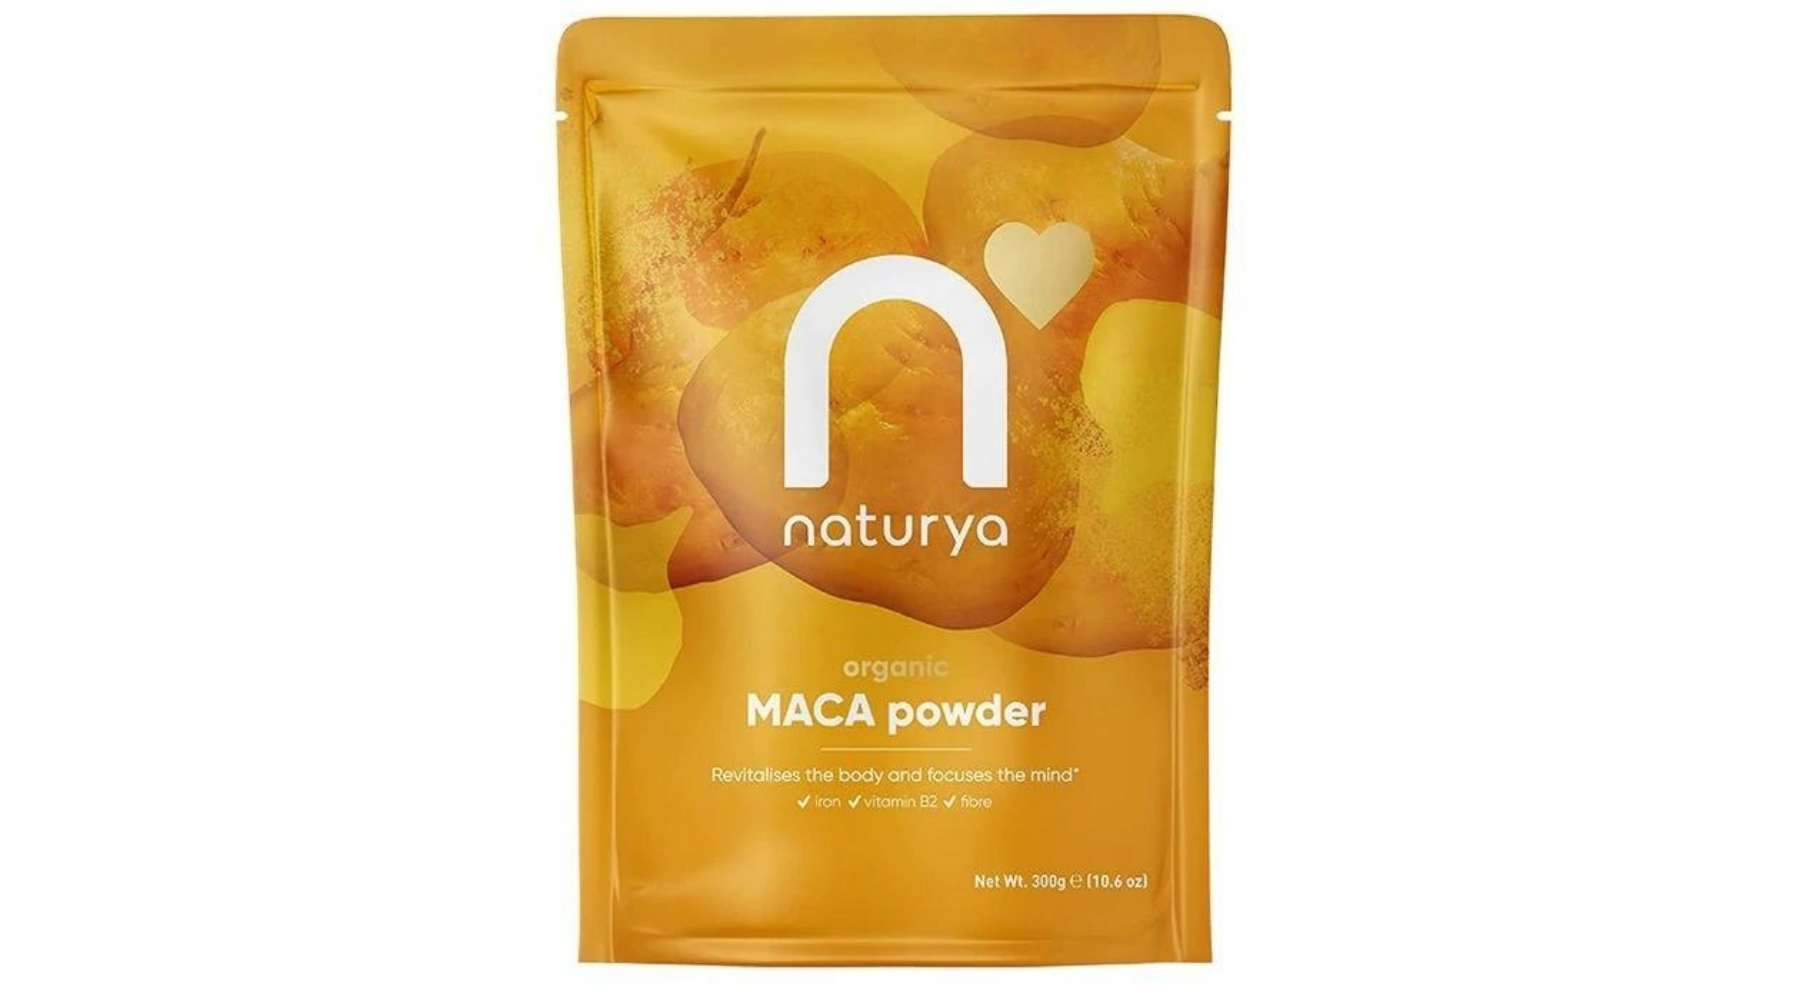 Naturya - Organic Maca Powder, 300g